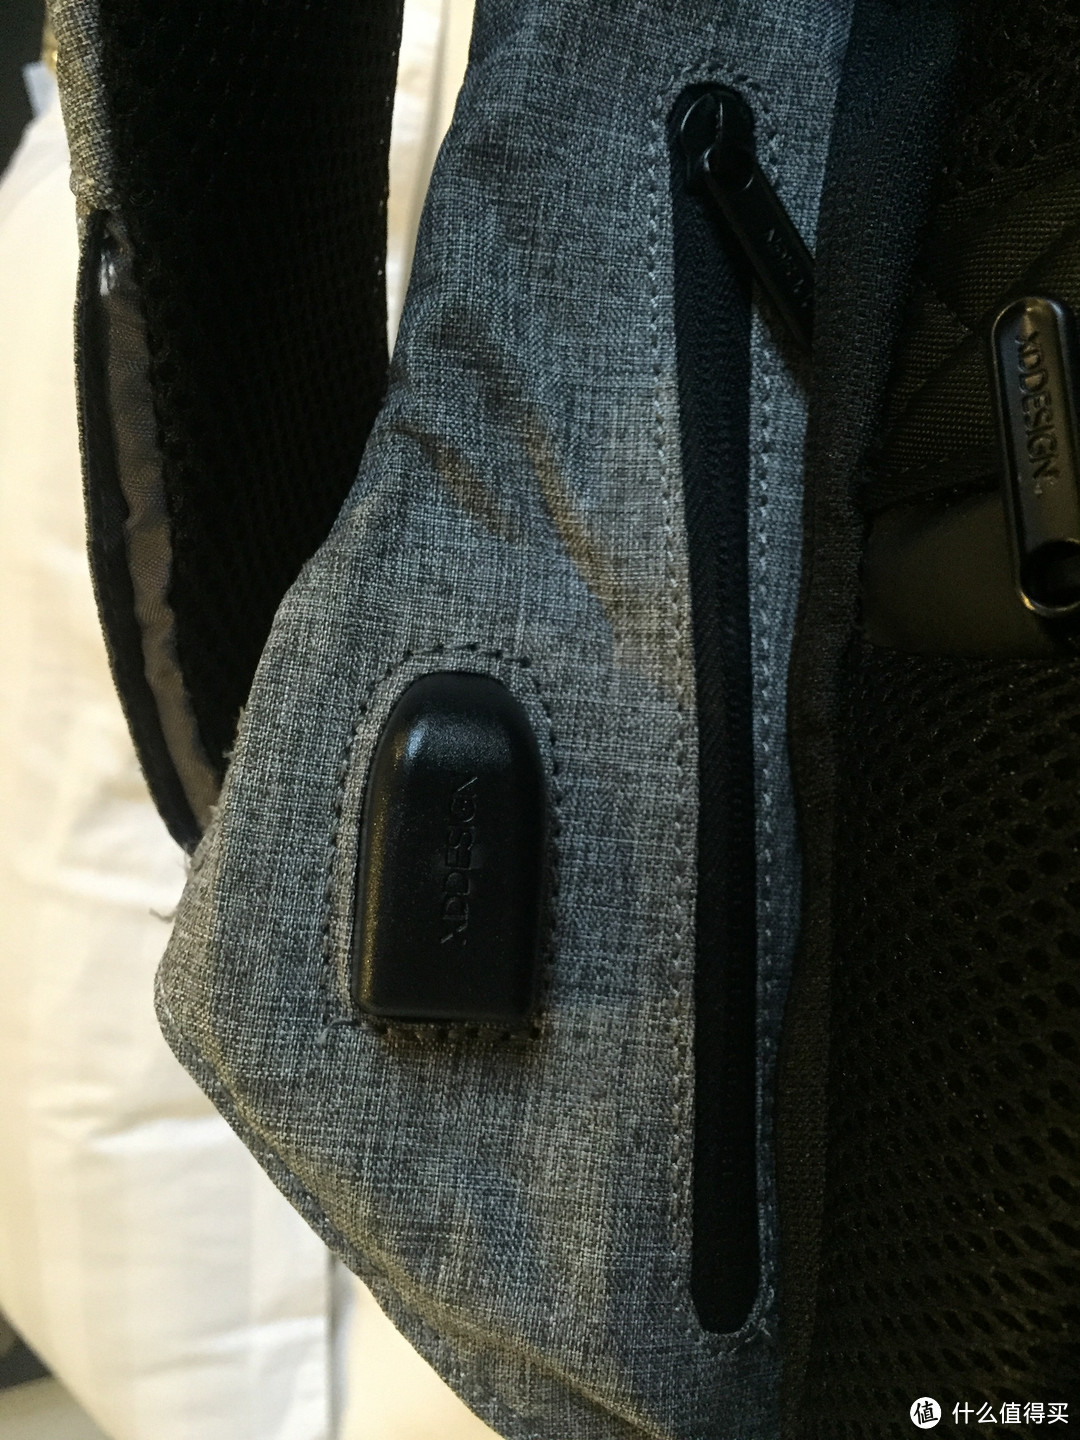 好好工作，背包也要大不同—XD DESIGN 蒙马特 城市安全防盗背包 开箱